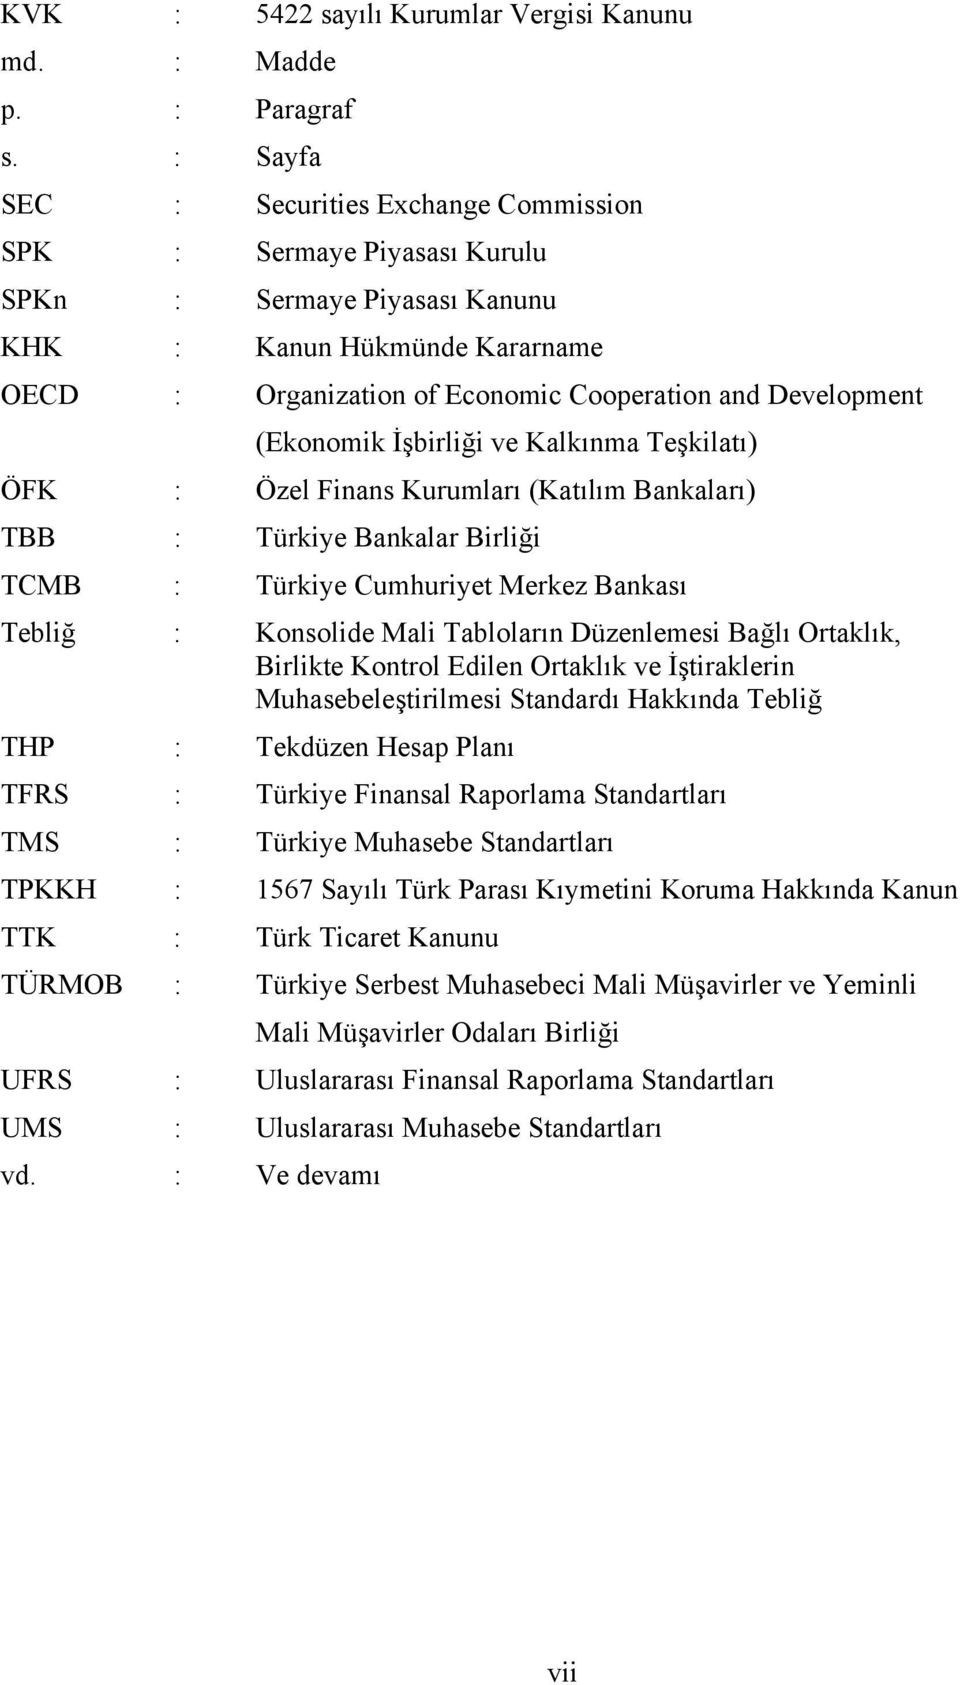 (Ekonomik İşbirliği ve Kalkınma Teşkilatı) ÖFK : Özel Finans Kurumları (Katılım Bankaları) TBB : Türkiye Bankalar Birliği TCMB : Türkiye Cumhuriyet Merkez Bankası Tebliğ : Konsolide Mali Tabloların